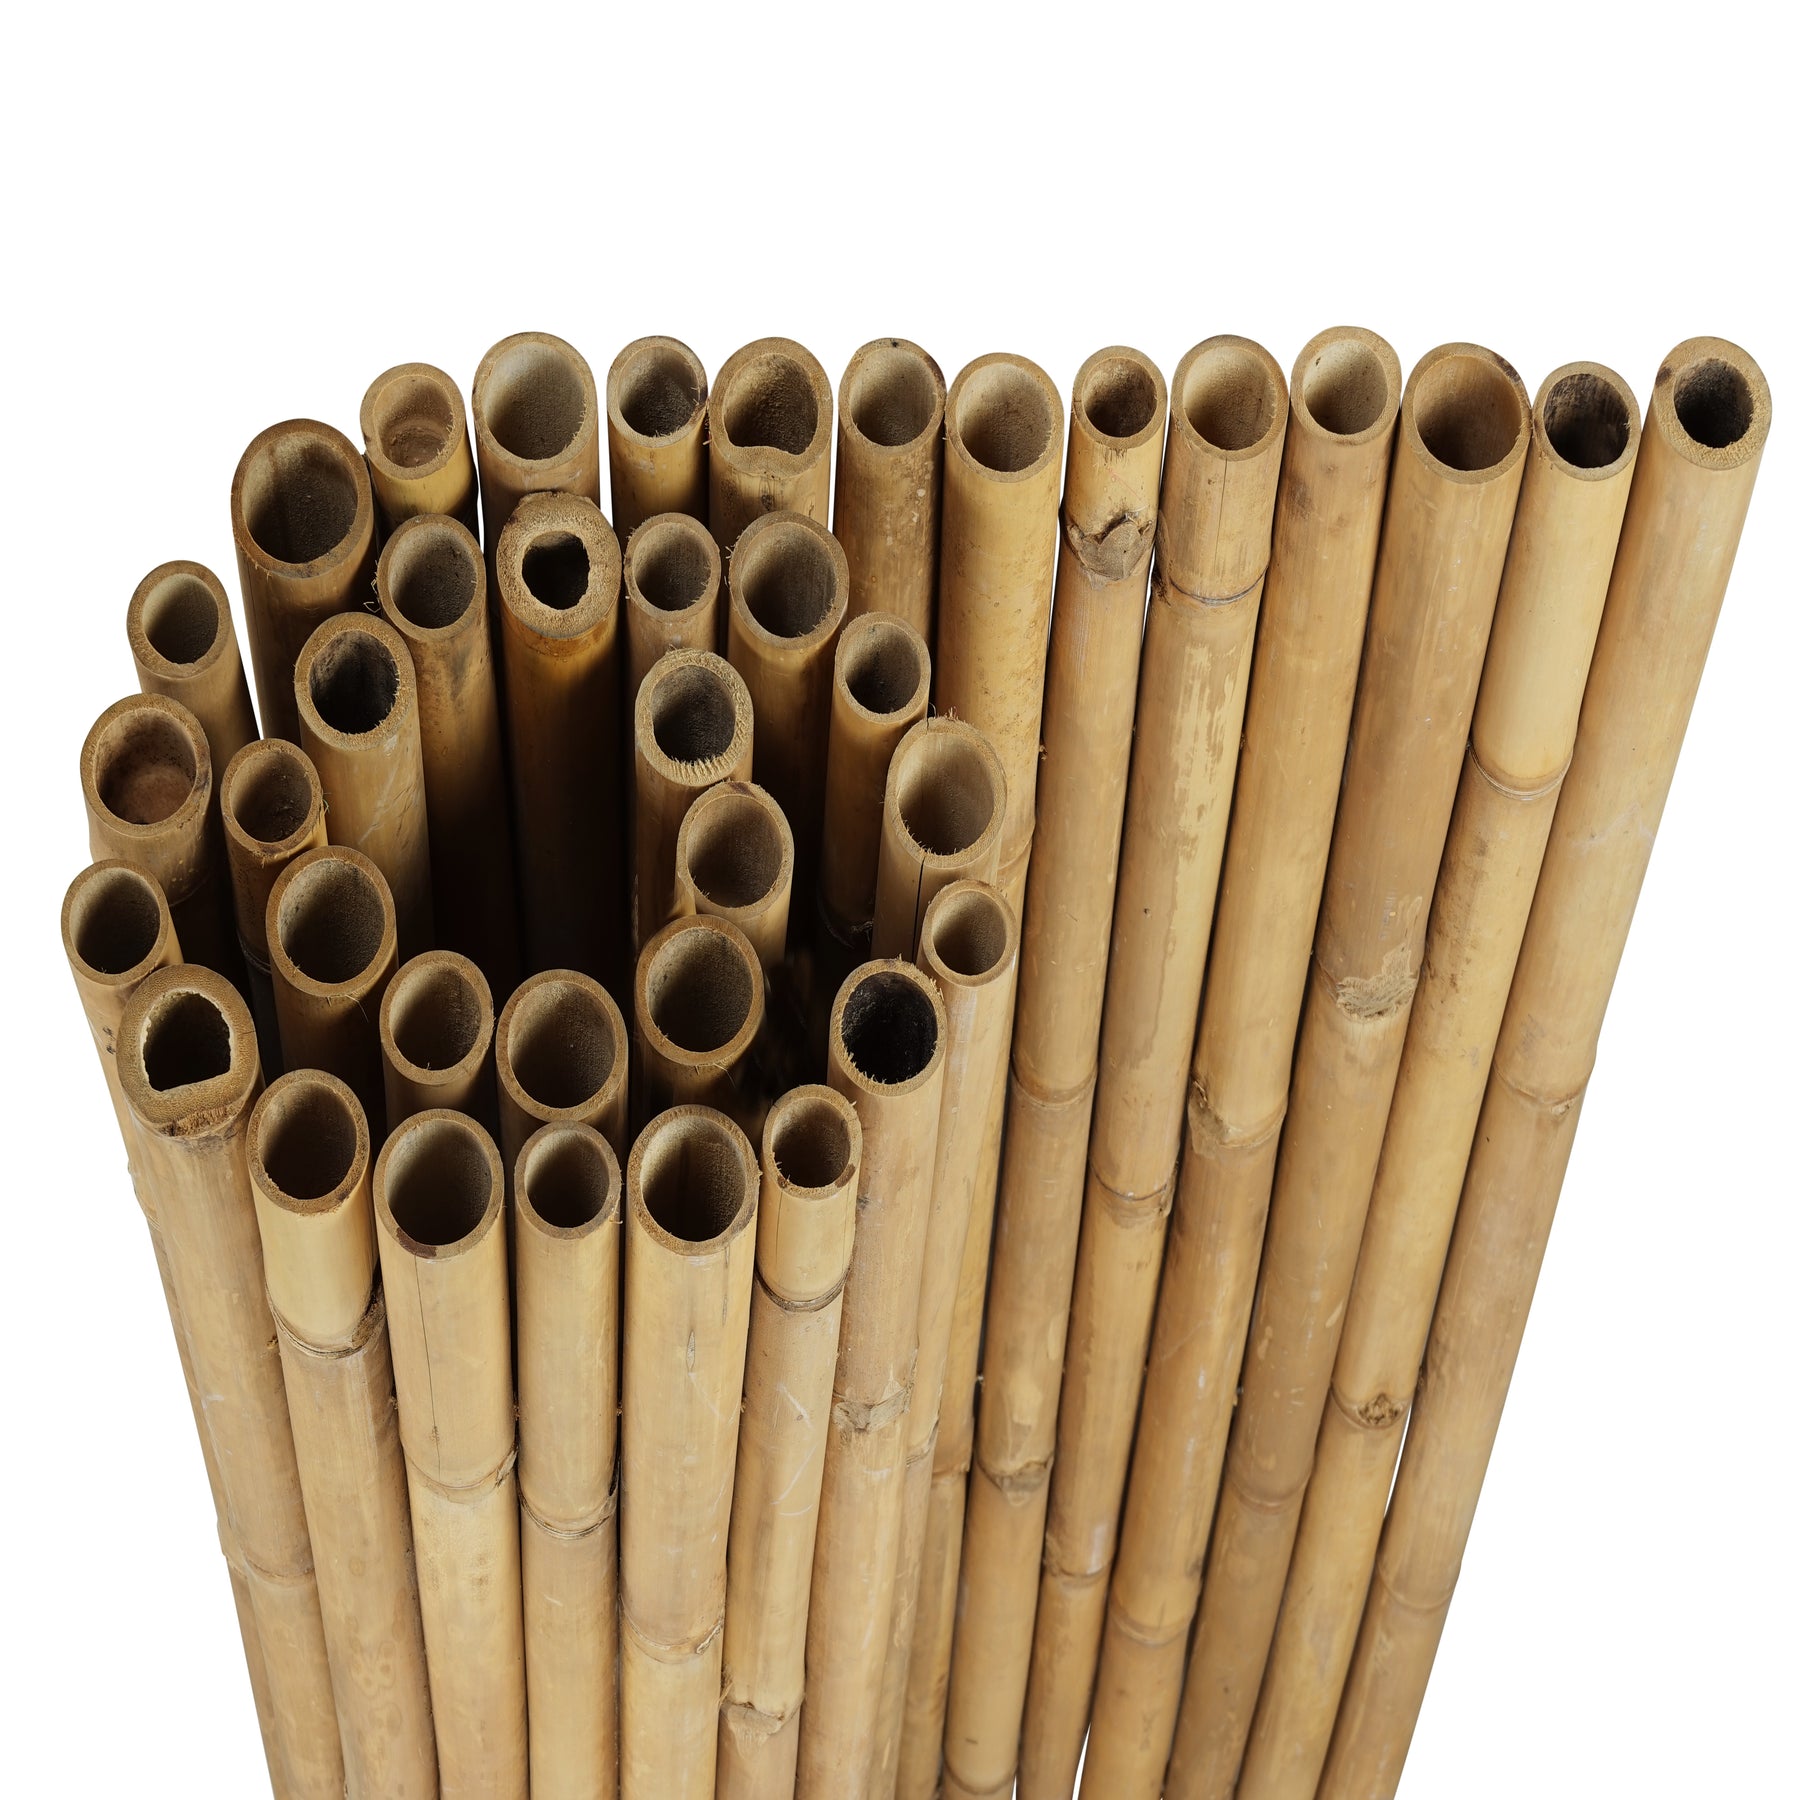 Rouleau de Clôture de Bambou Deluxe Naturel